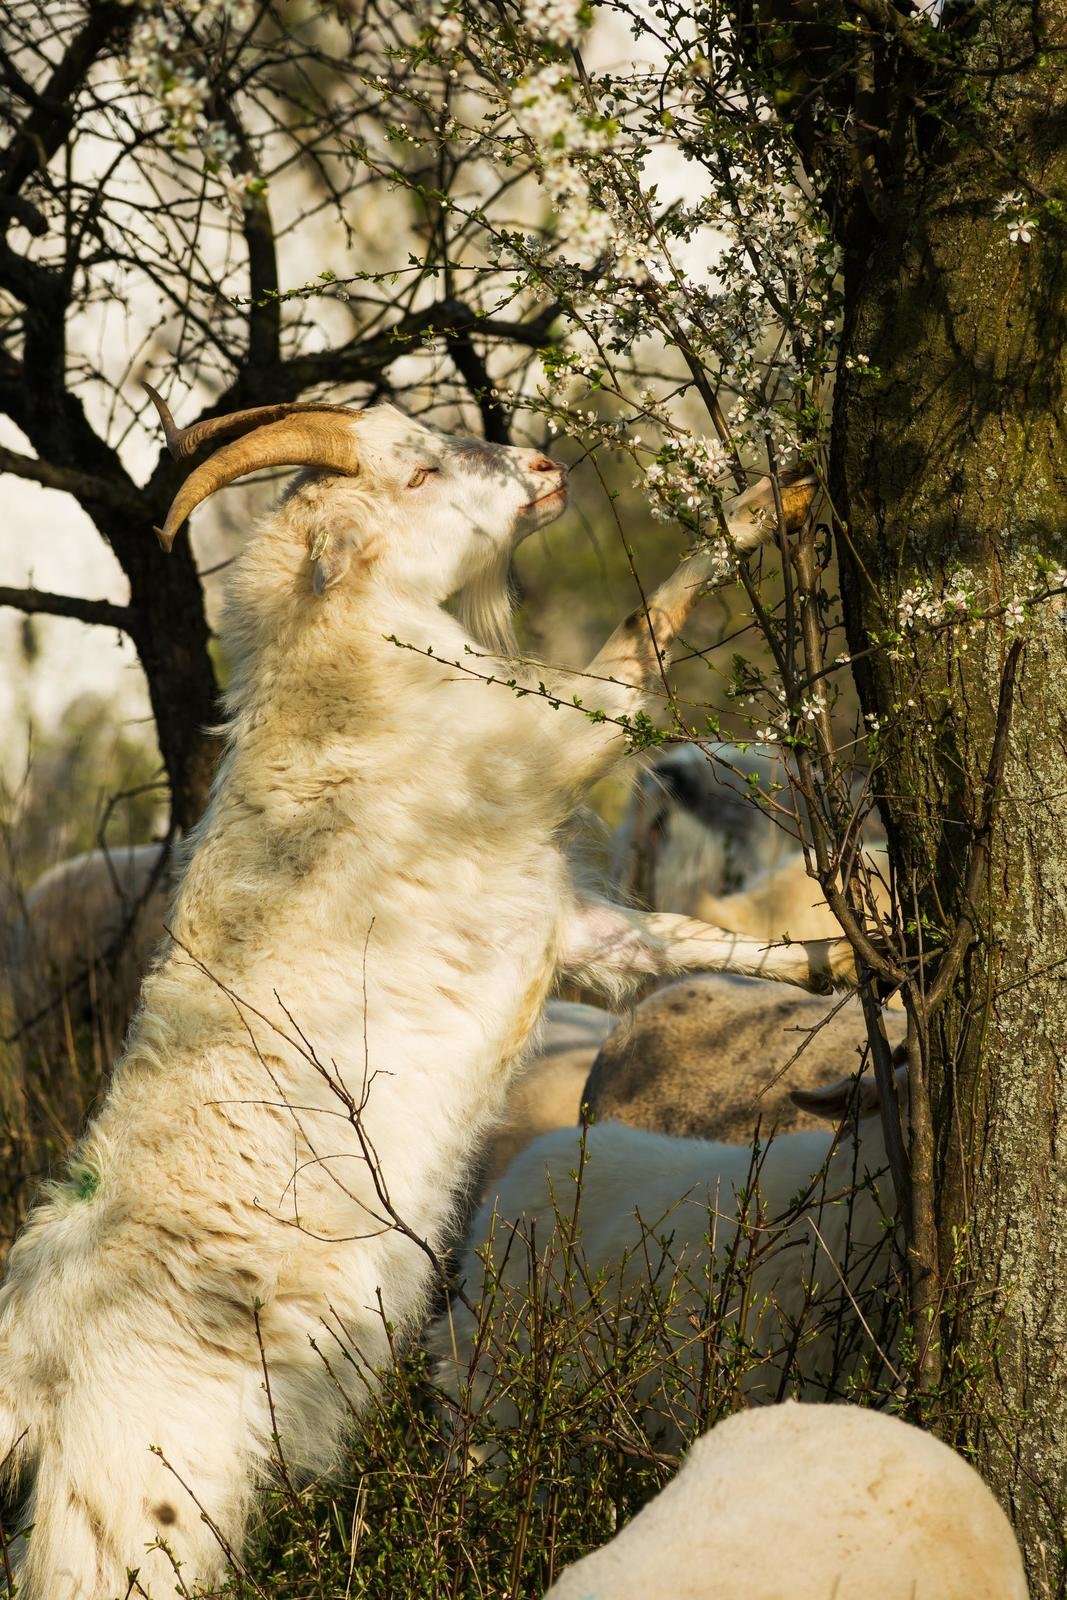 Pálavskou Stolovou horu po mnoha letech opět spásá stádo 70 ovcí a koz. To hlídají dva pejsci.